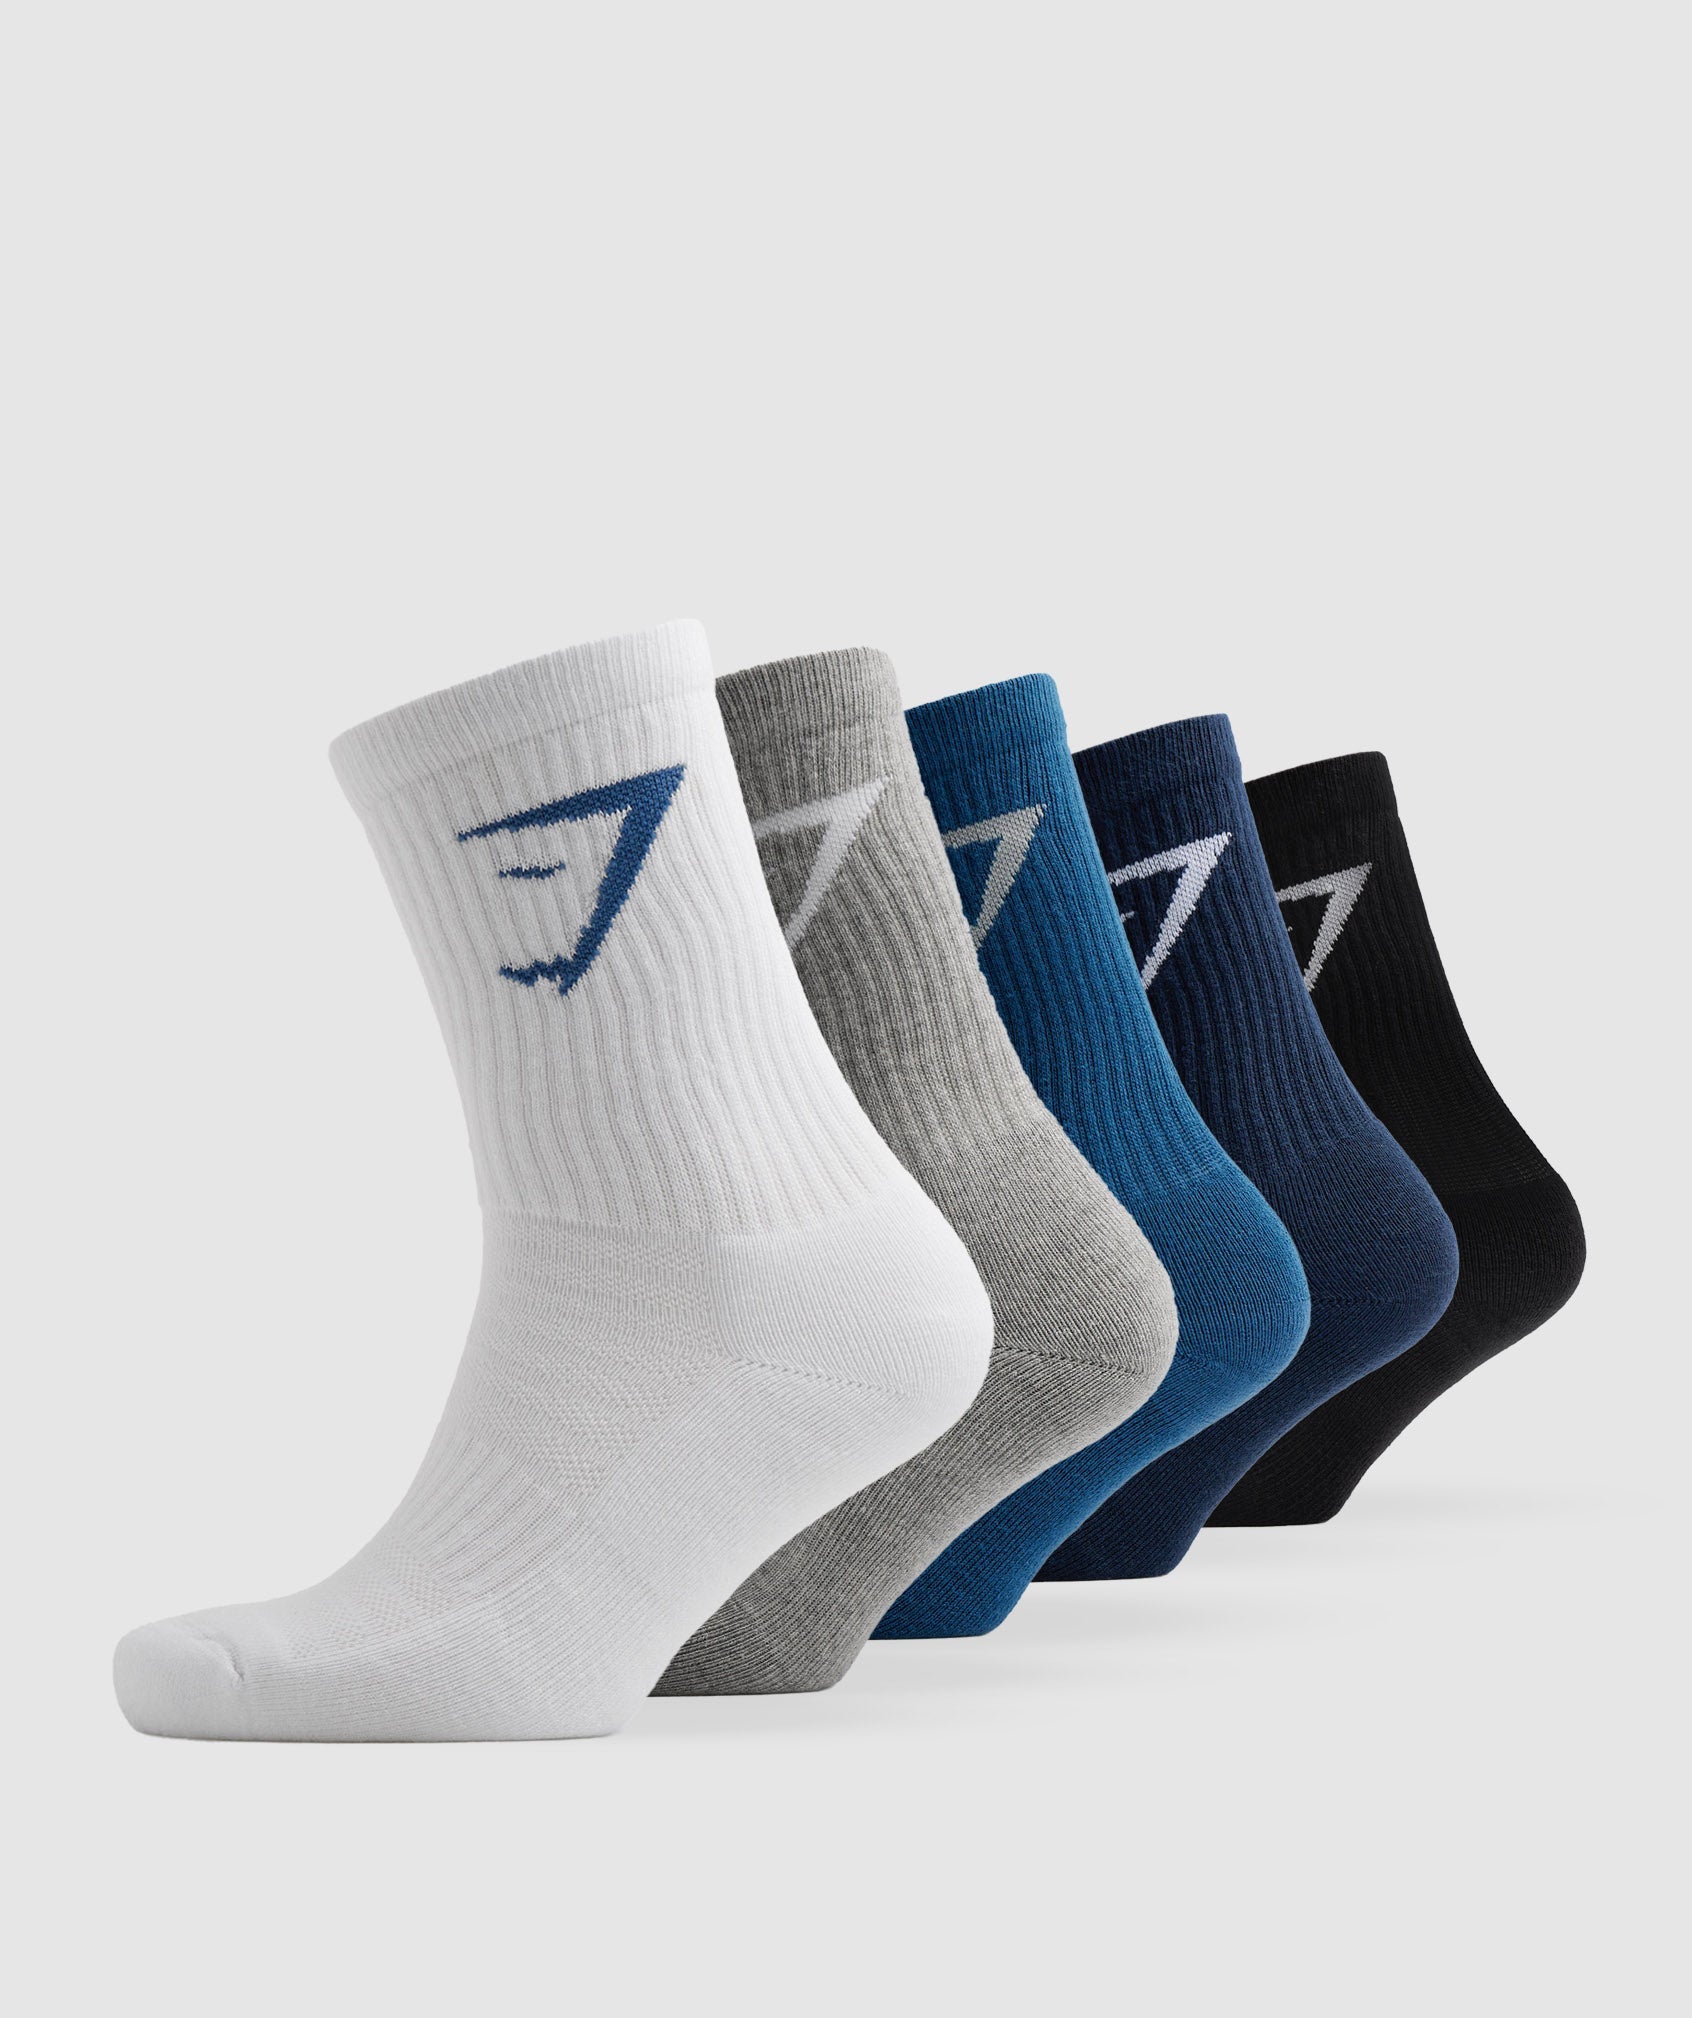 Gymshark Crew Socks 5pk - White/Black/Grey/Blue/Navy